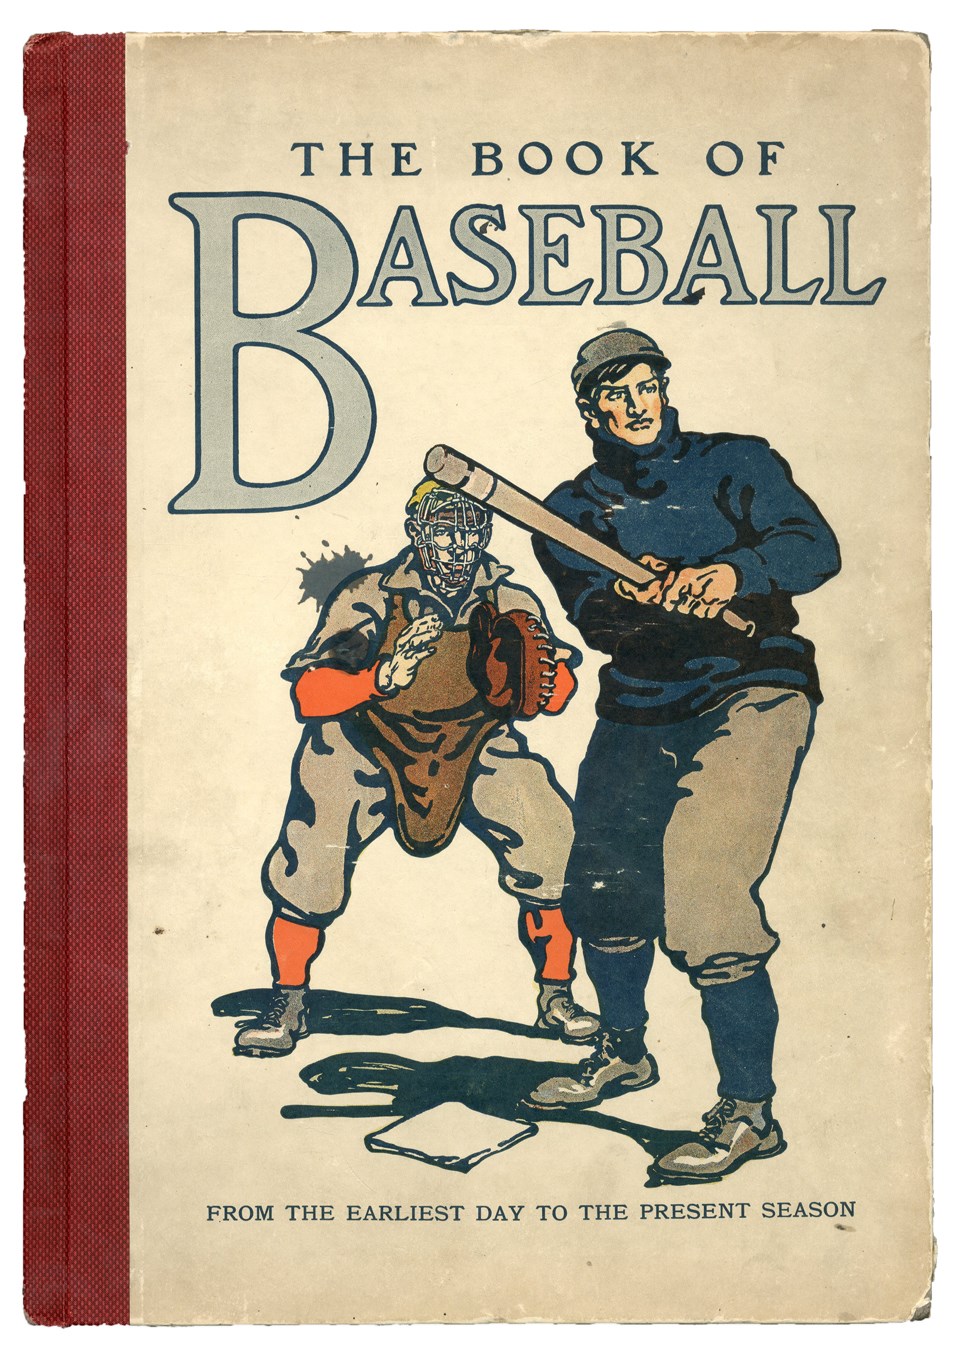 Baseball Memorabilia - High Grade Example 1911 "The Book of Baseball"